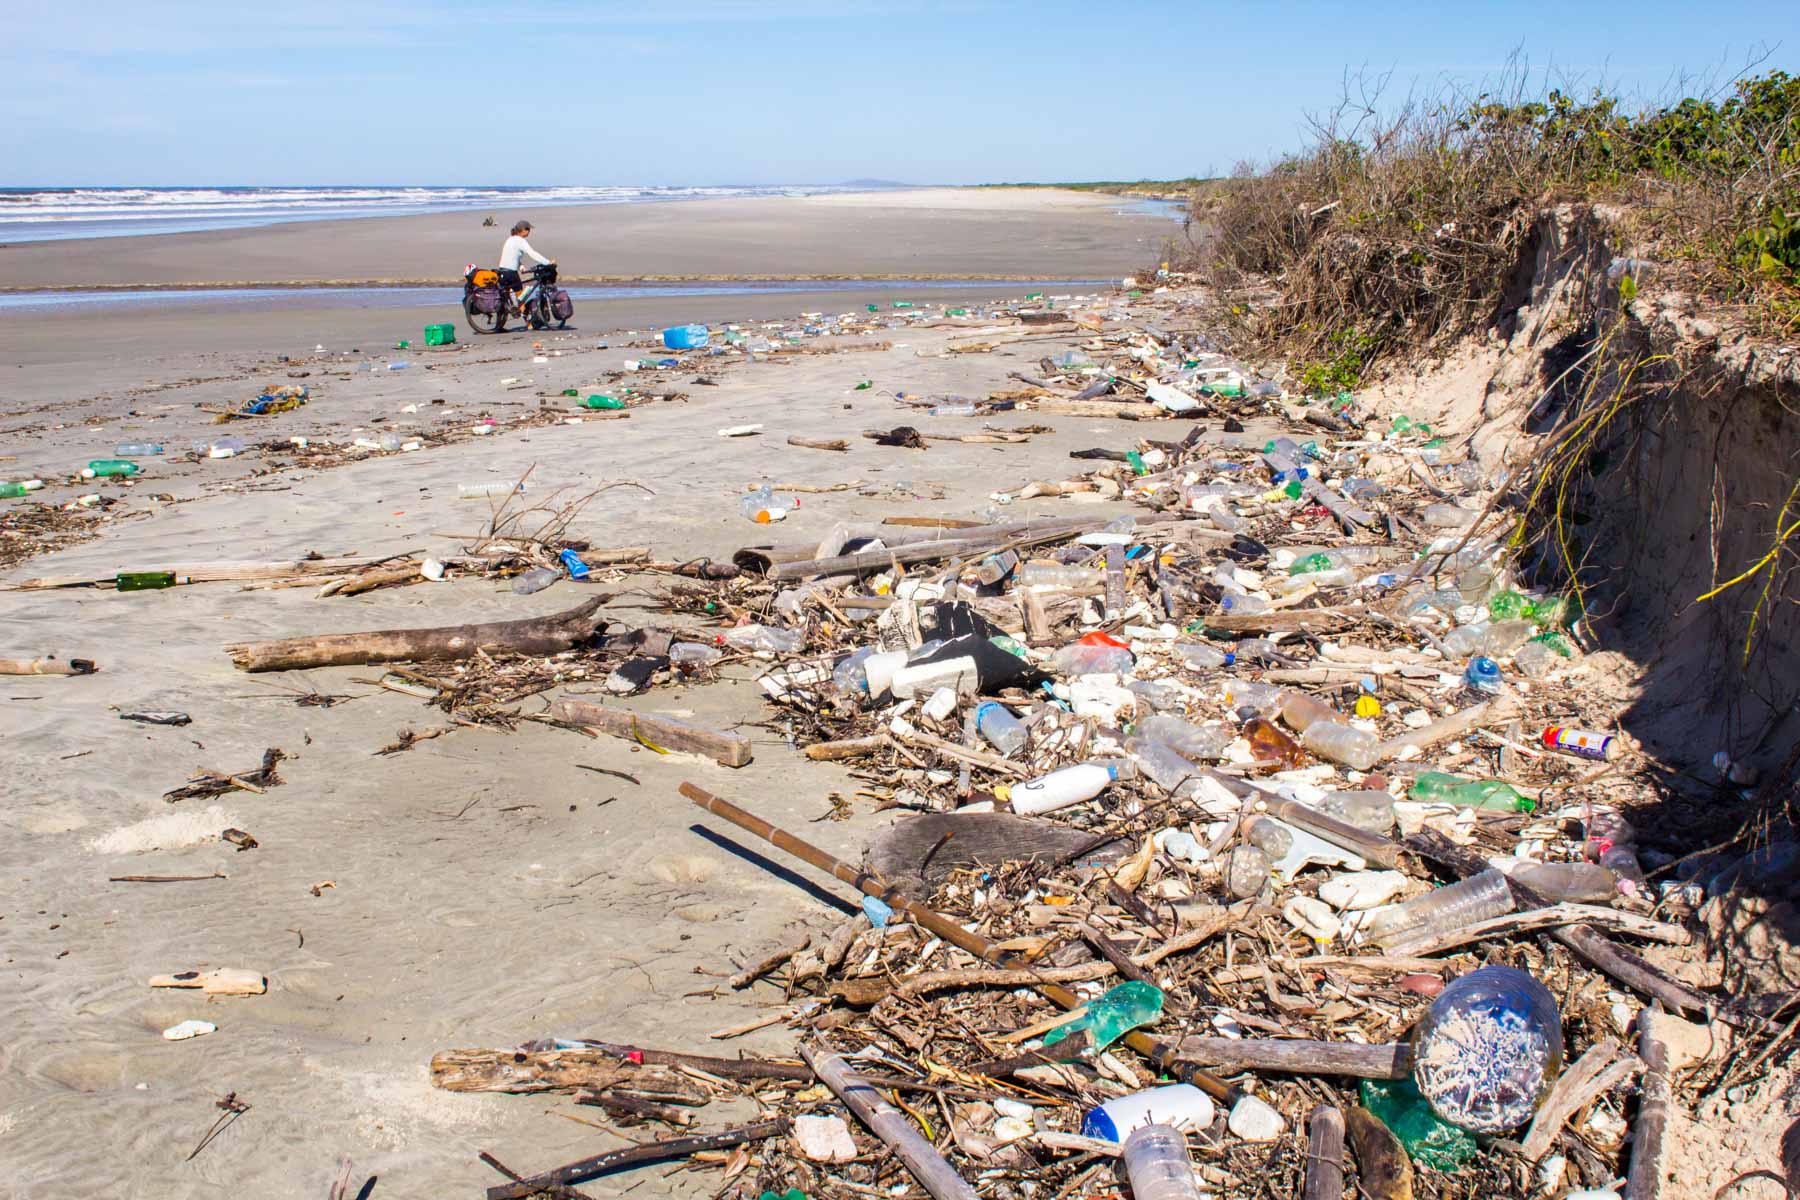 De nombreux déchets en plastique jonchent le sable d’une plage du Brésil. Au loin, on peut apercevoir, une femme avec son vélo de cyclotourisme.